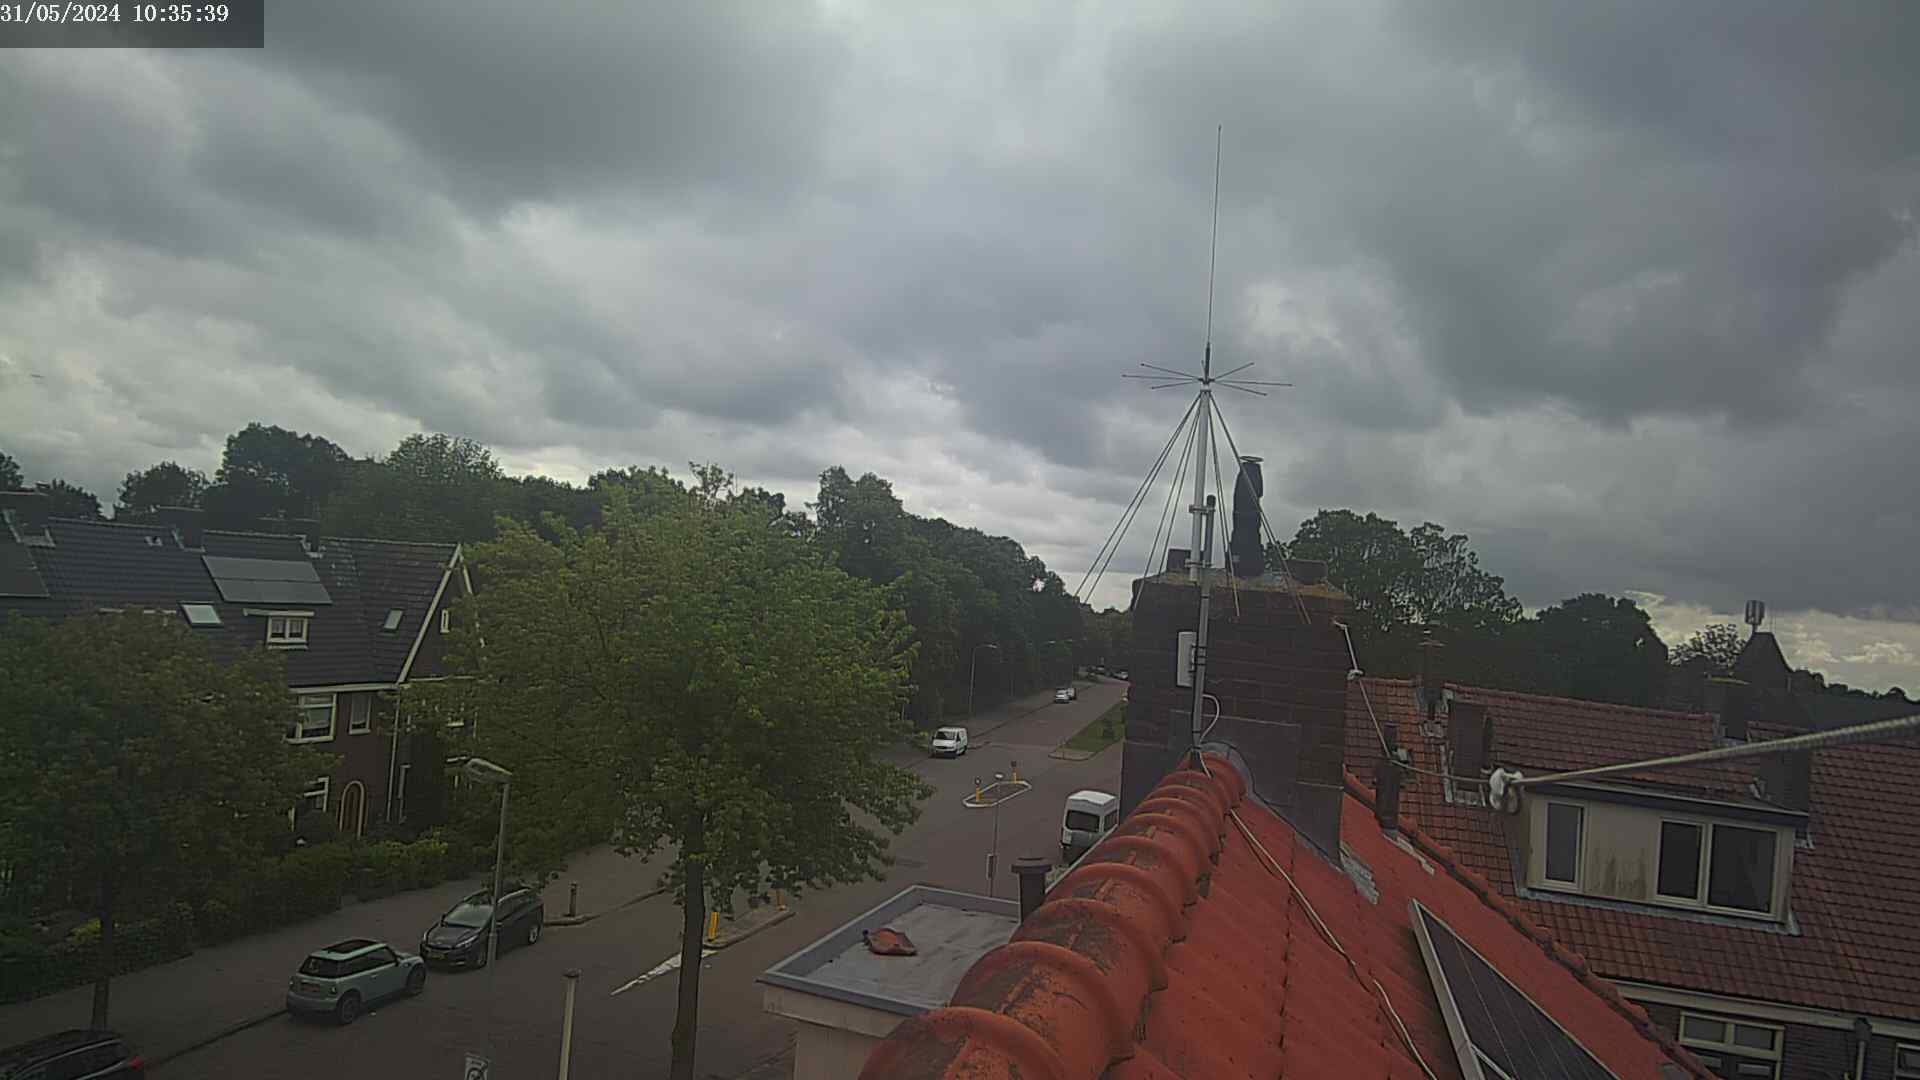 Haarlem Mi. 11:35